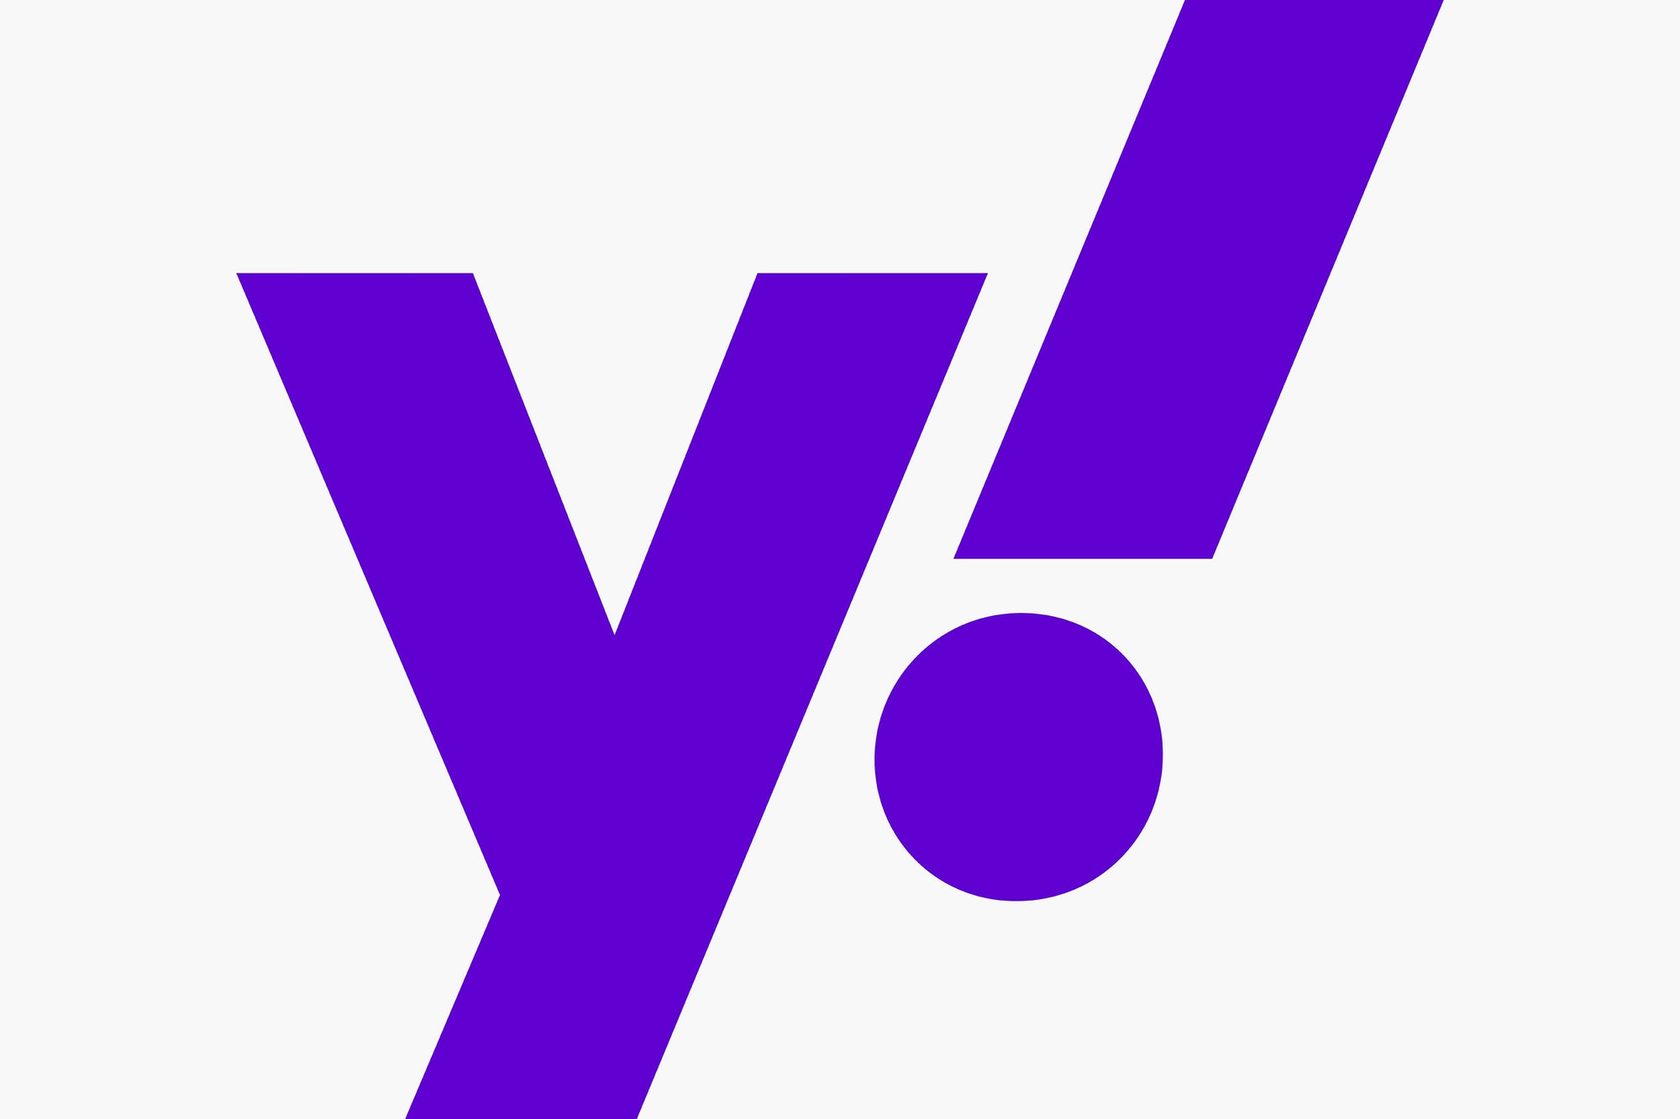 Короткая версия логотипа Yahoo!